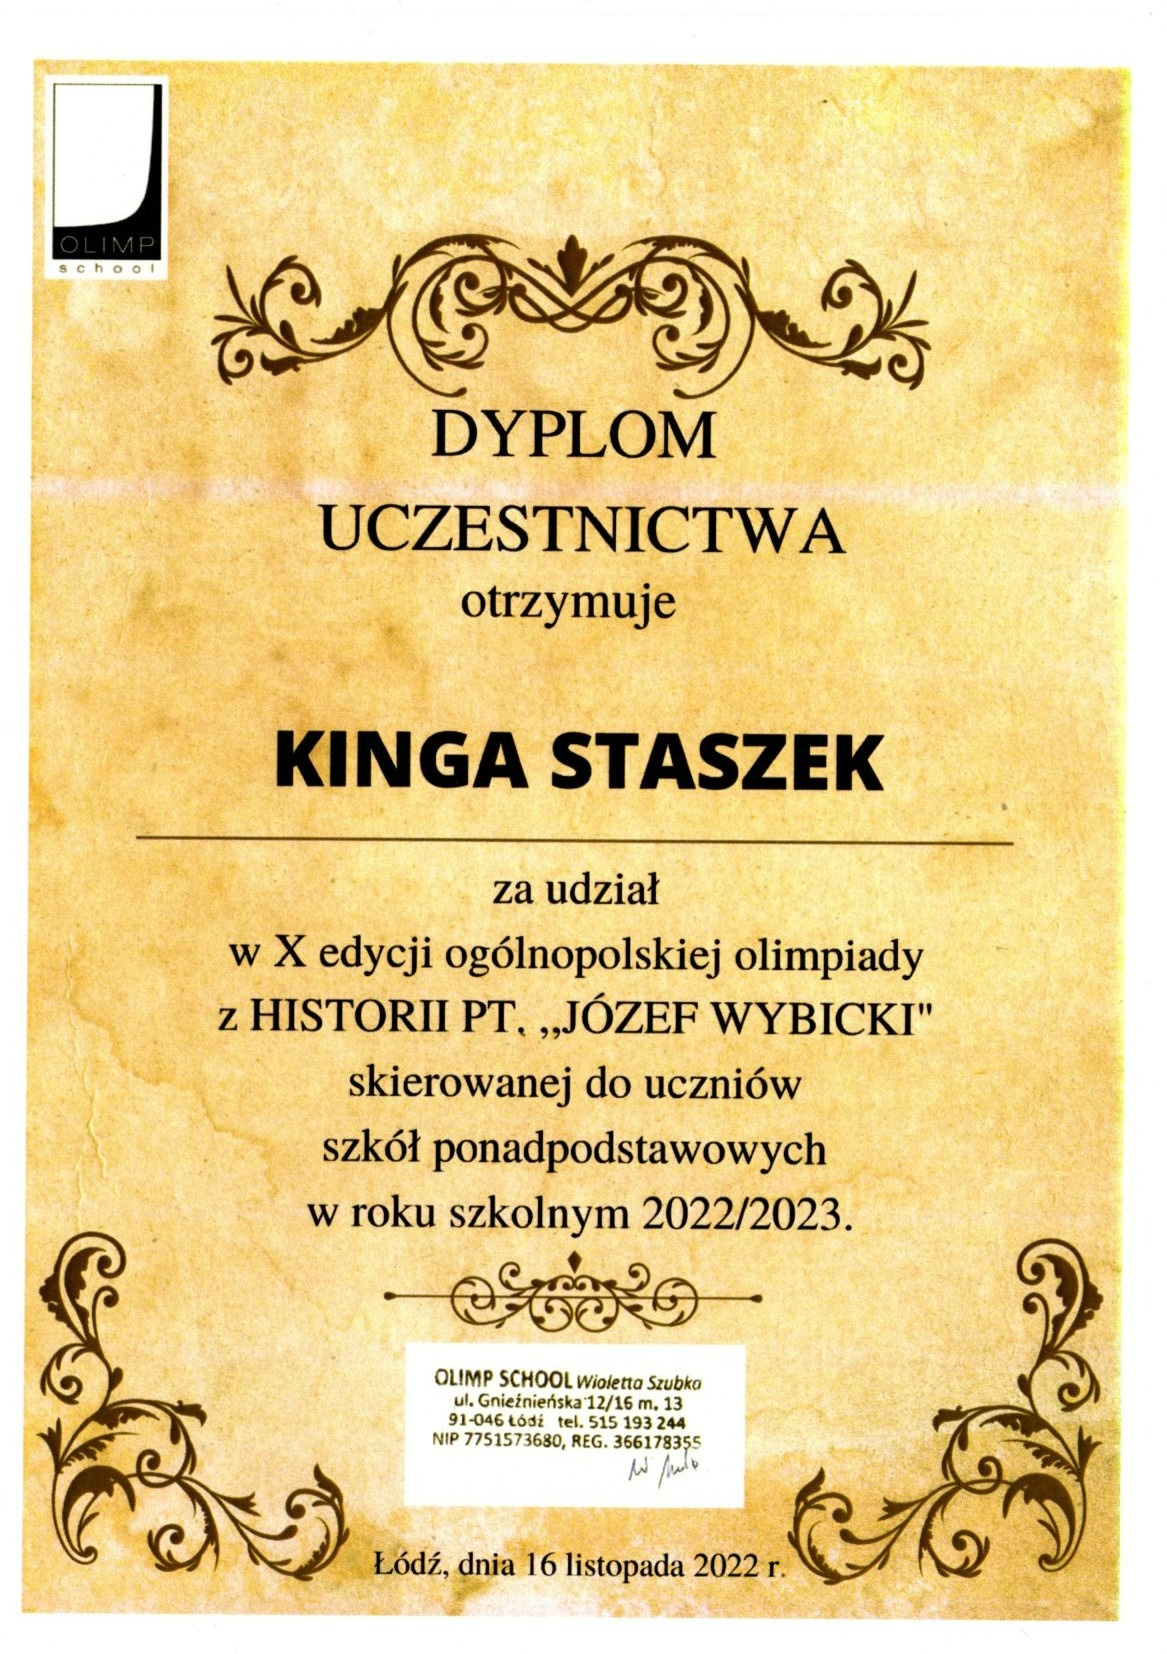 Dyplom uczestnictwa dla Kingi Staszek